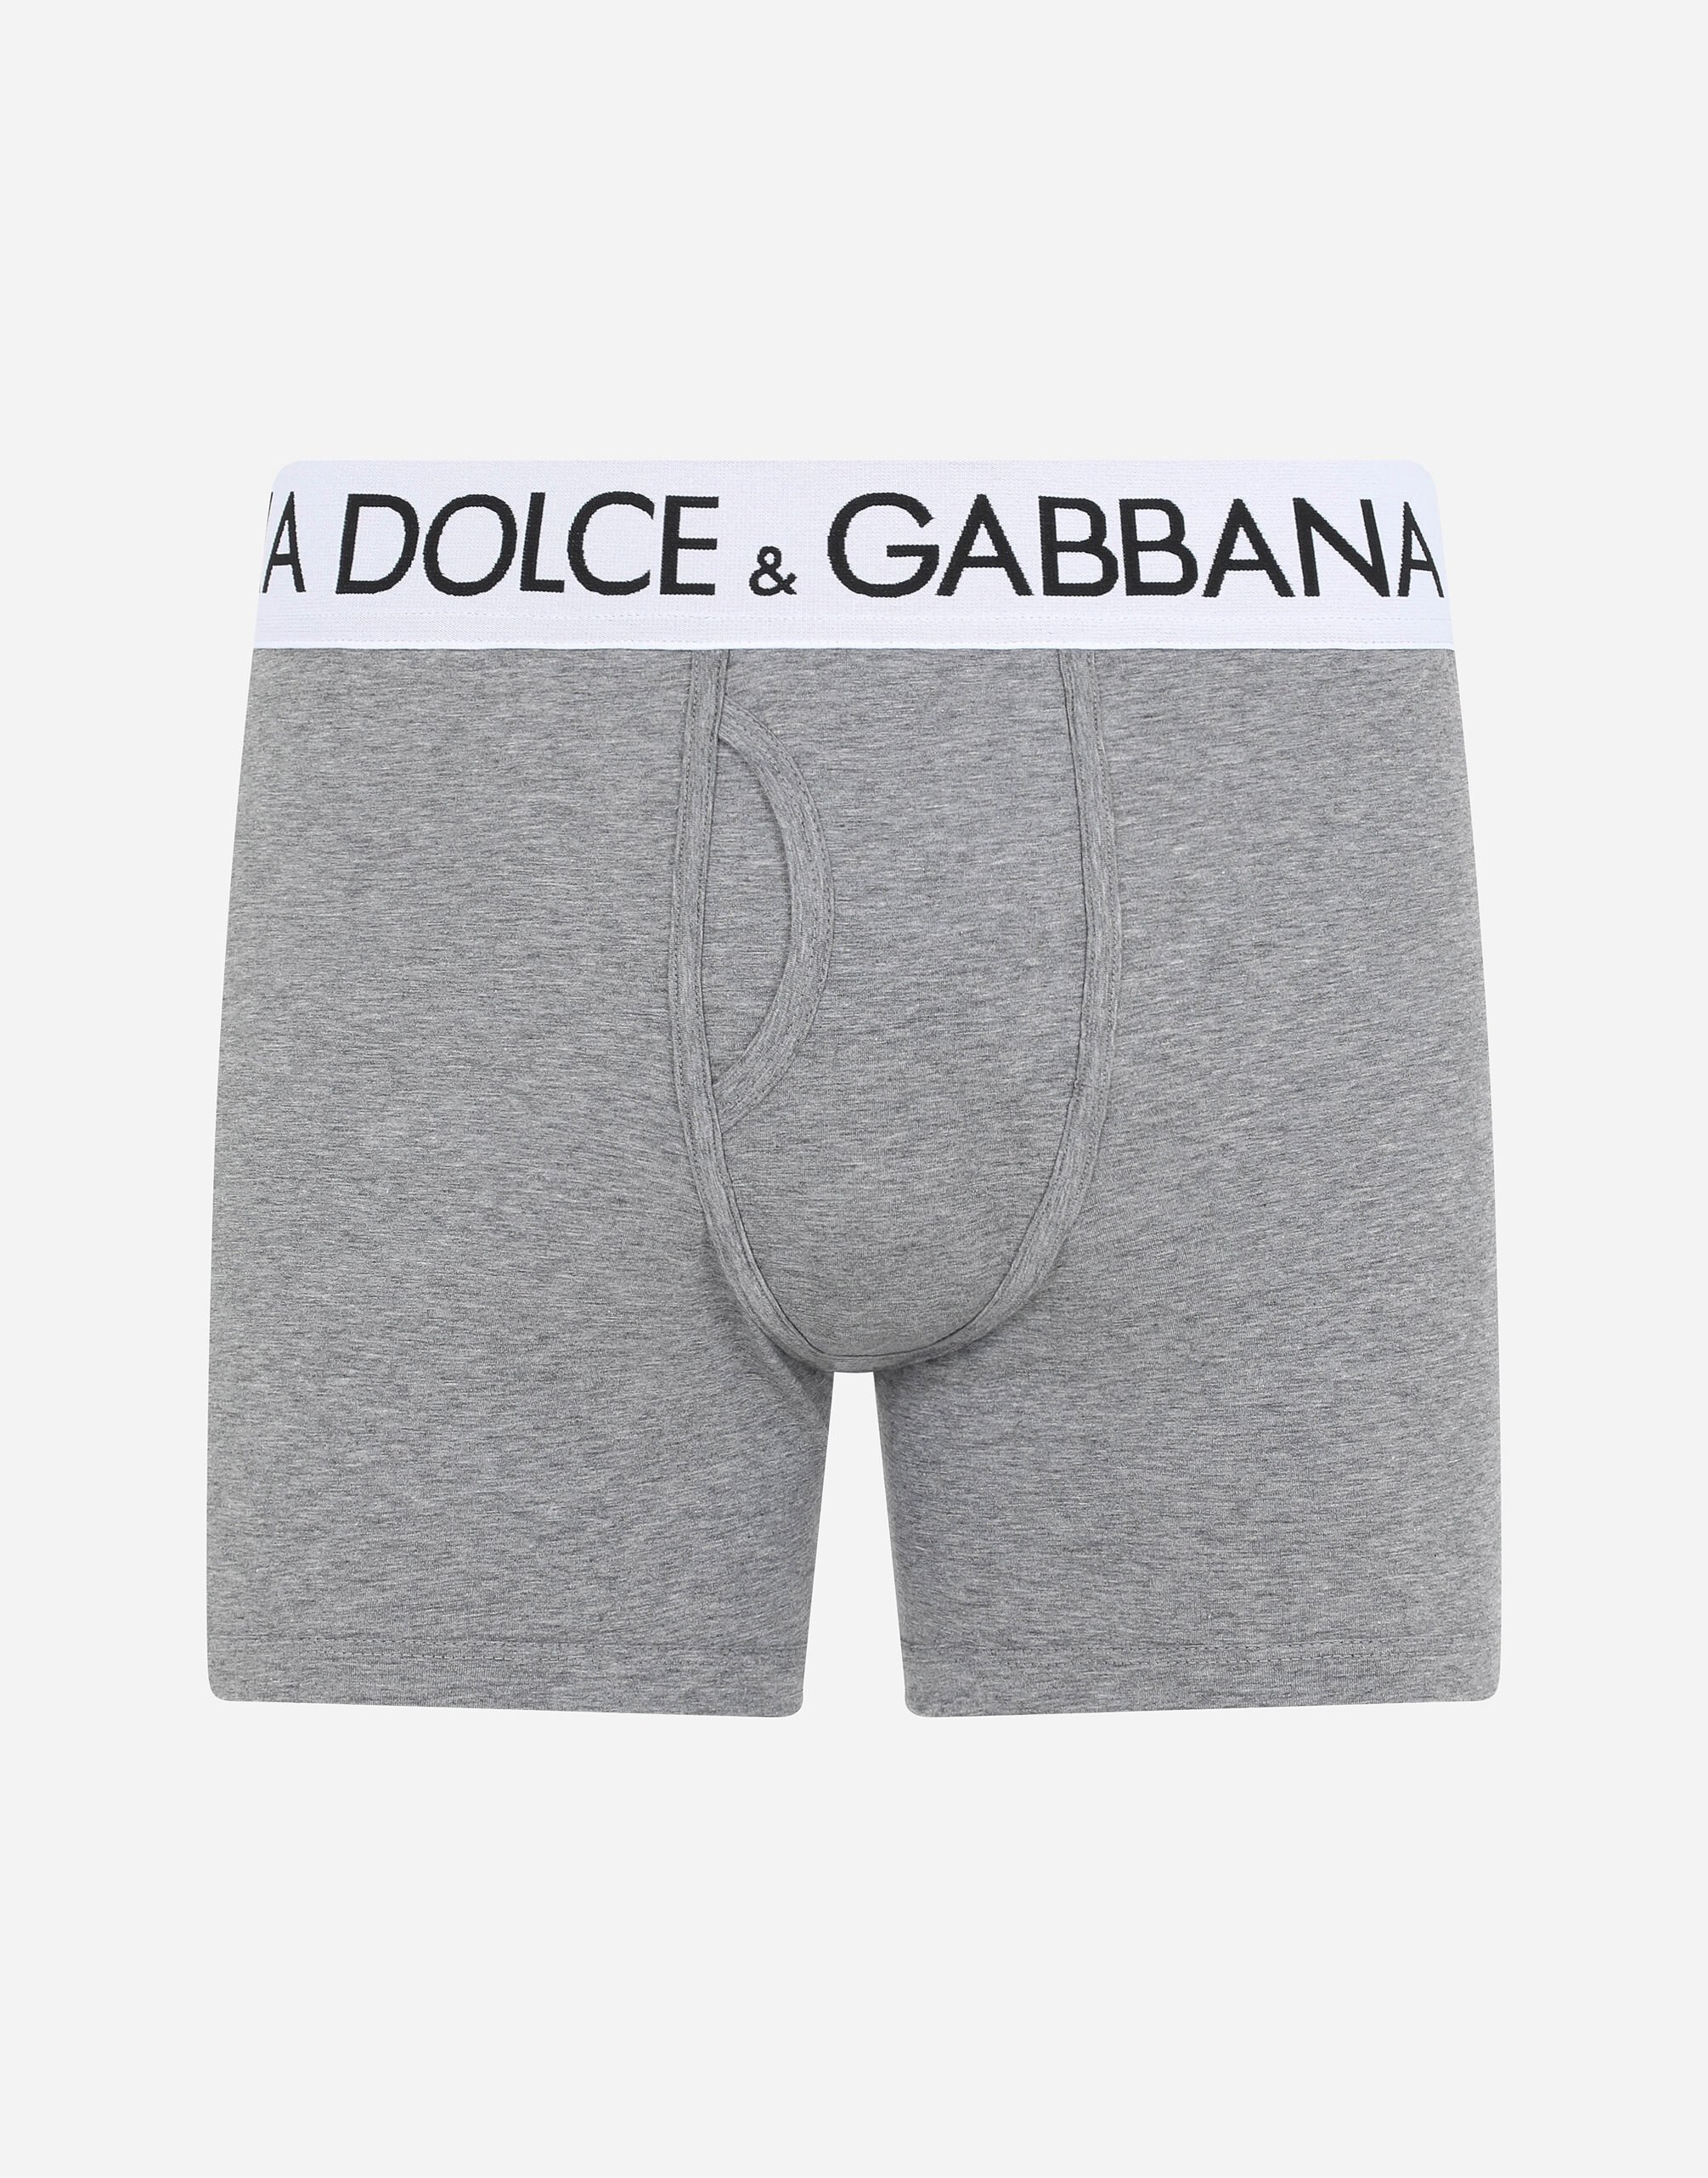 Dolce & Gabbana Two-way-stretch cotton jersey long-leg boxers Grey M9C07JONN95